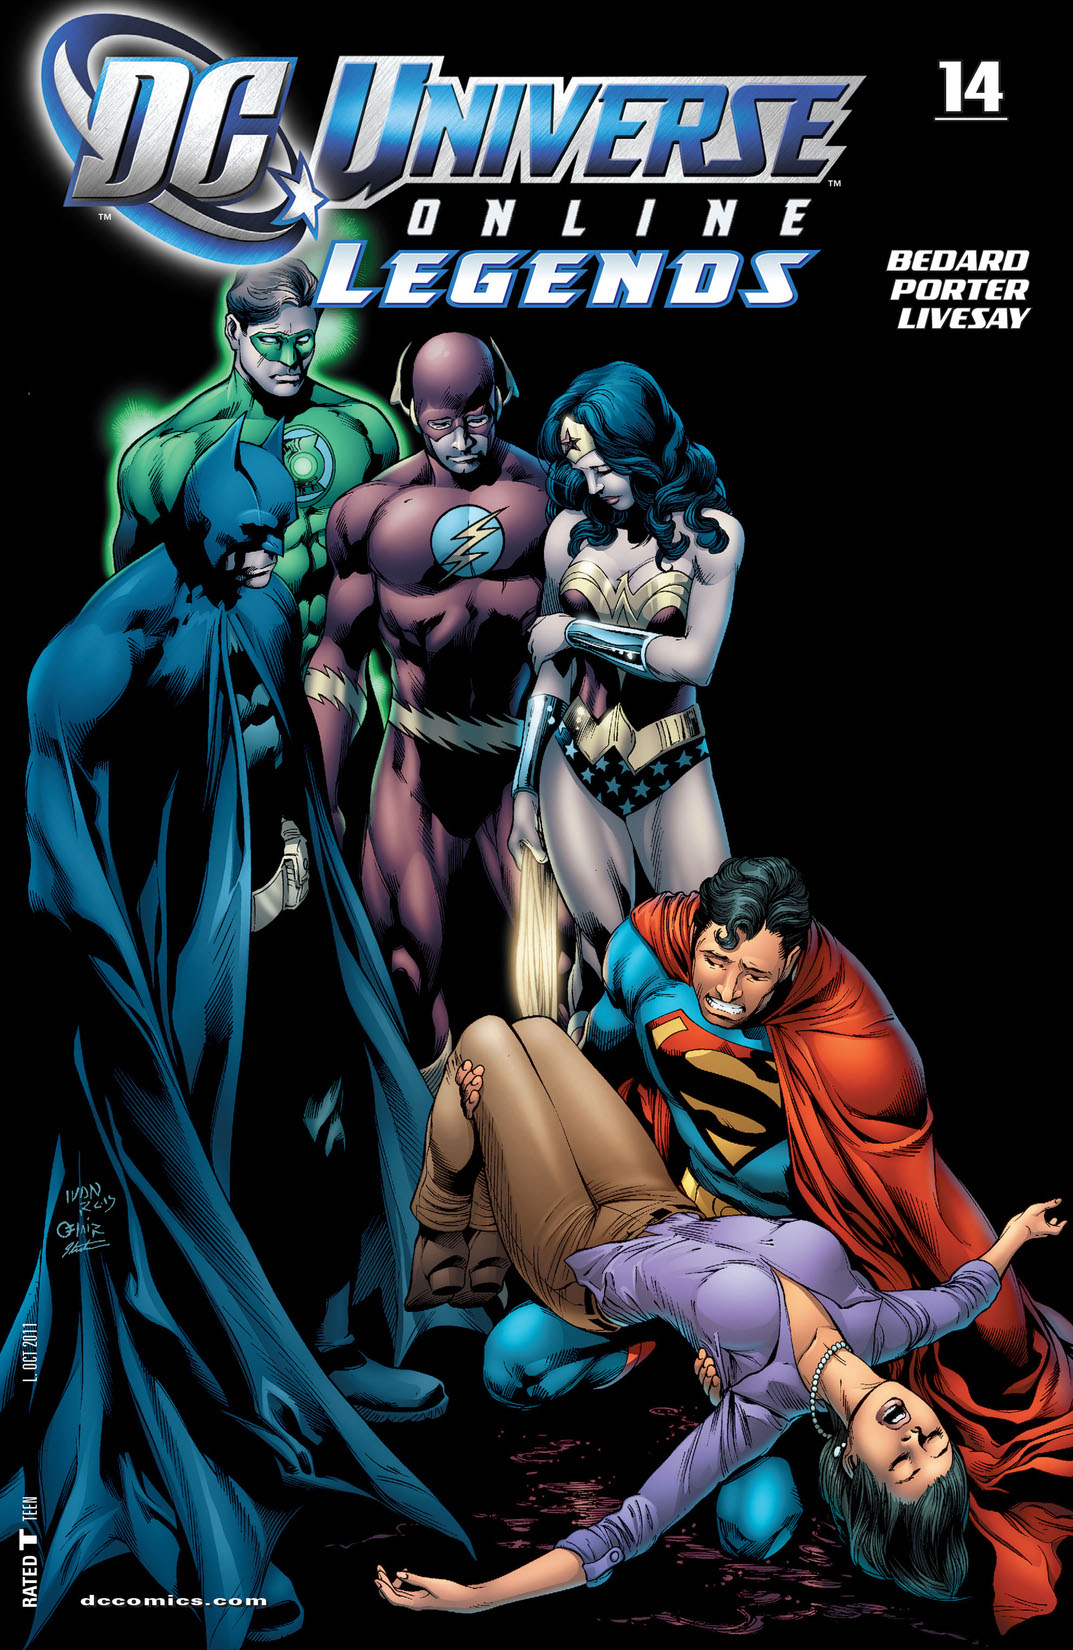 DC Universe Online Legends #14 preview images